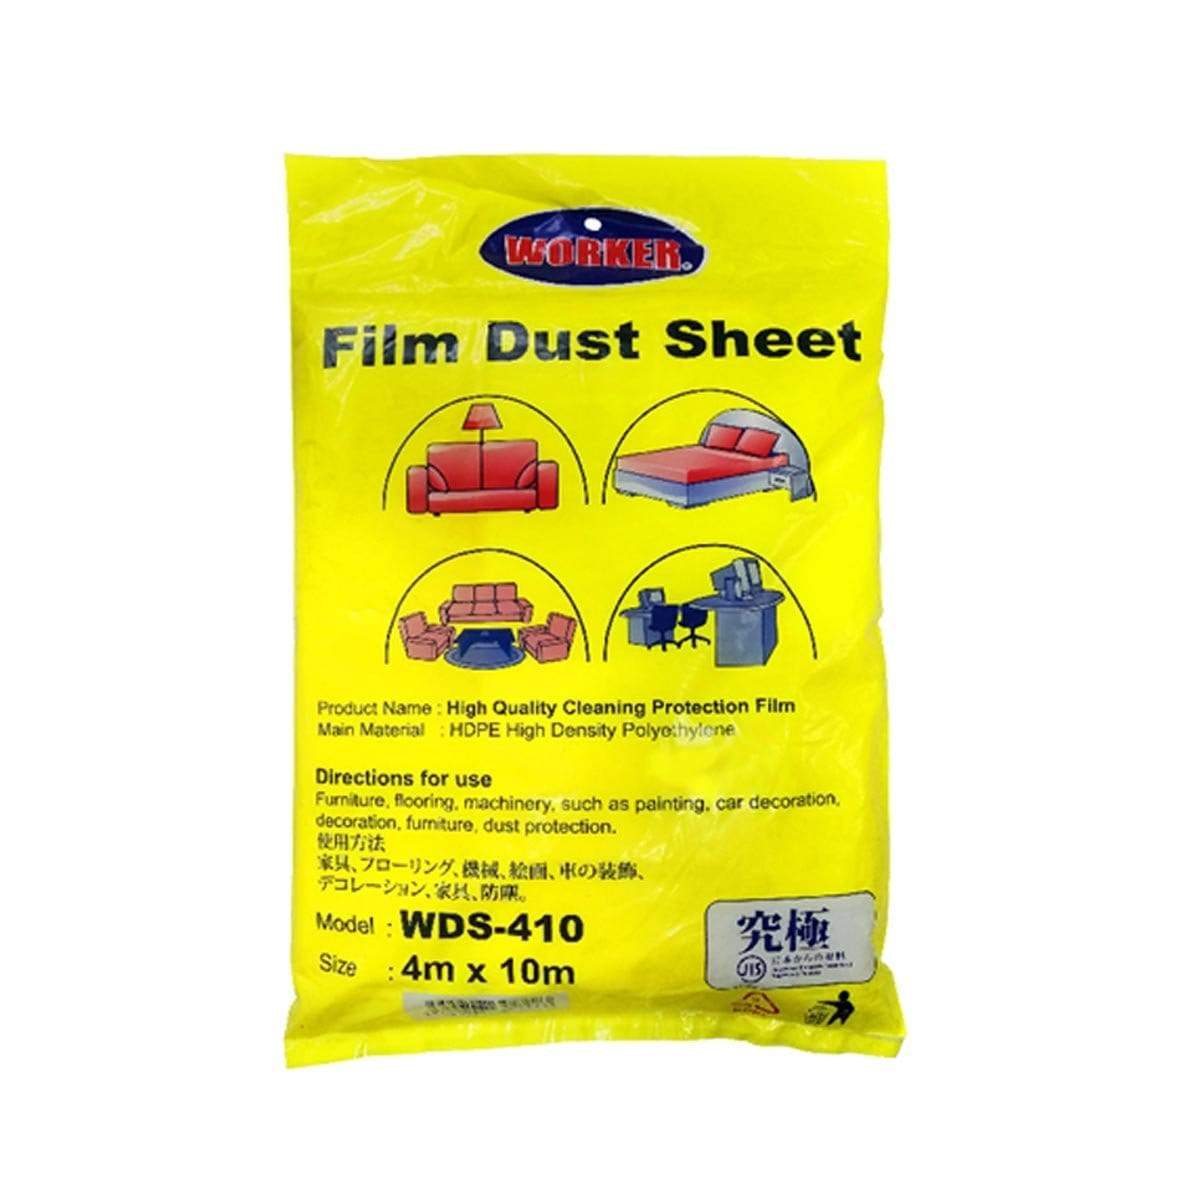 WORKER Film Dust Sheet WDS410